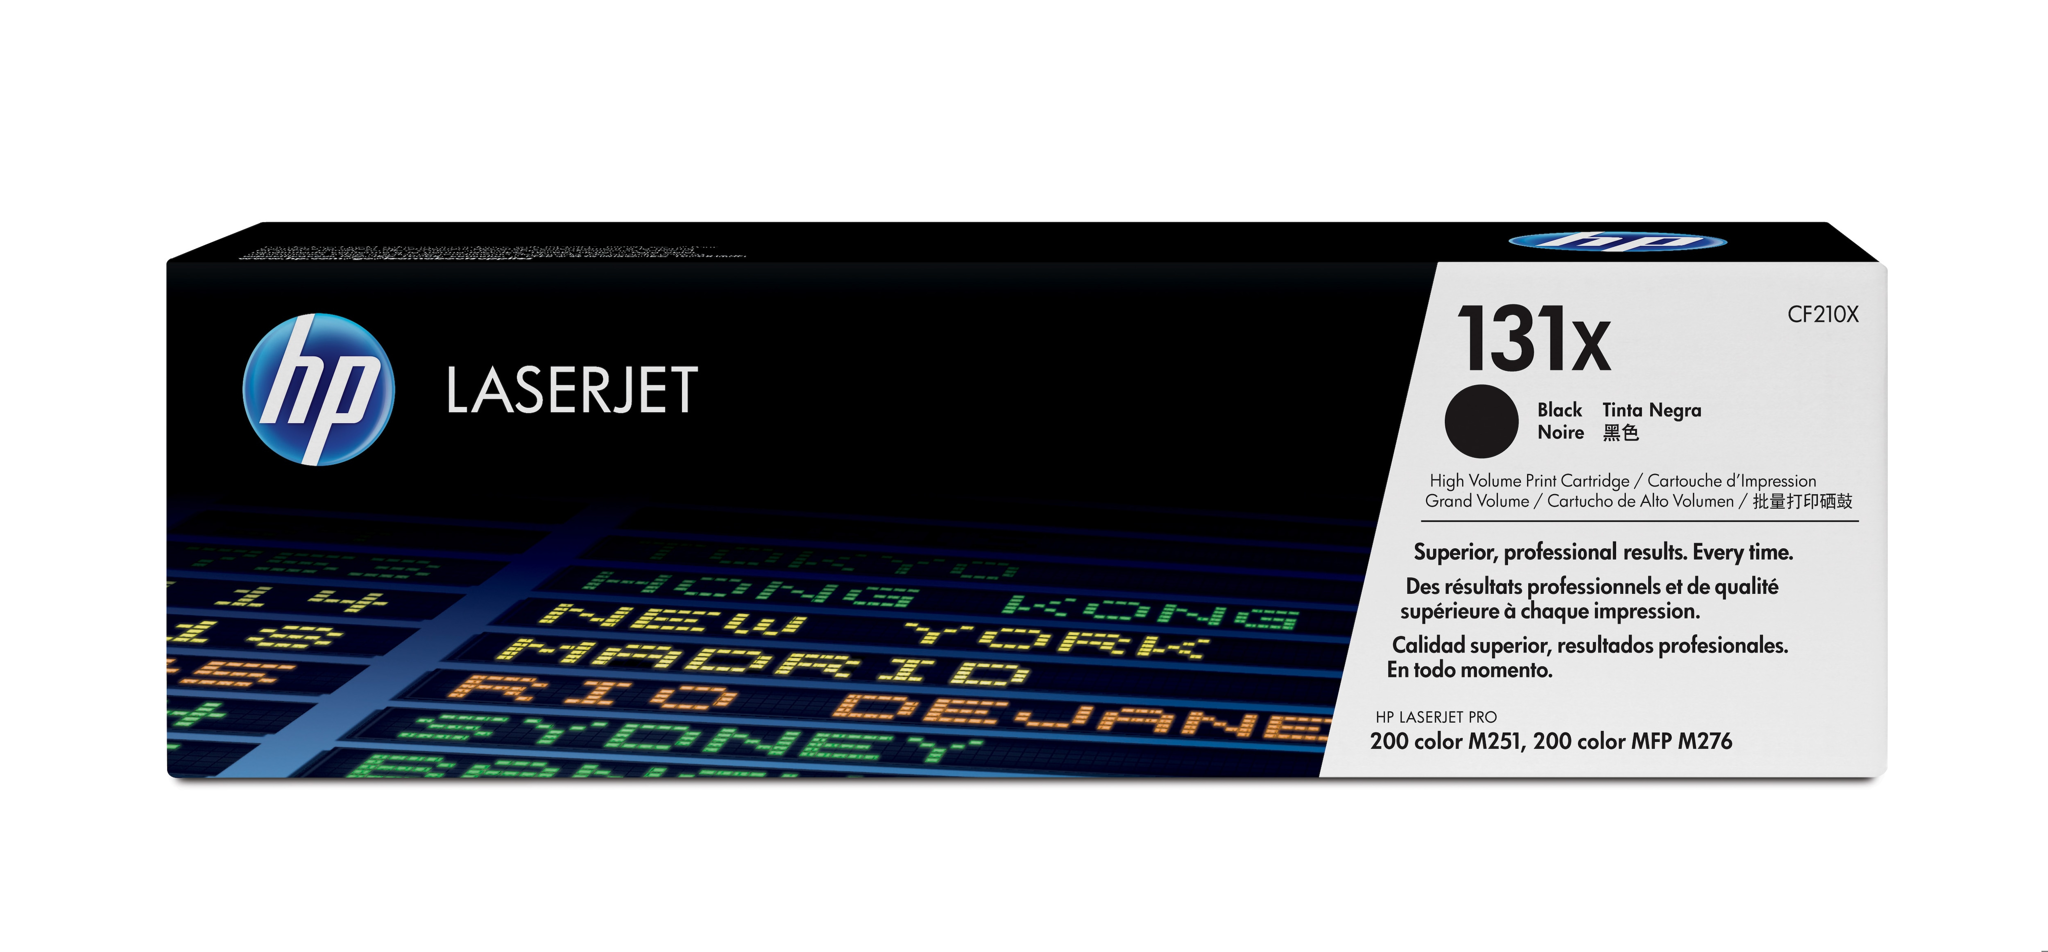 Bild von HP 131X Schwarz Original LaserJet Tonerkartusche mit hoher Reichweite - 2400 Seiten - Schwarz - 1 Stück(e)